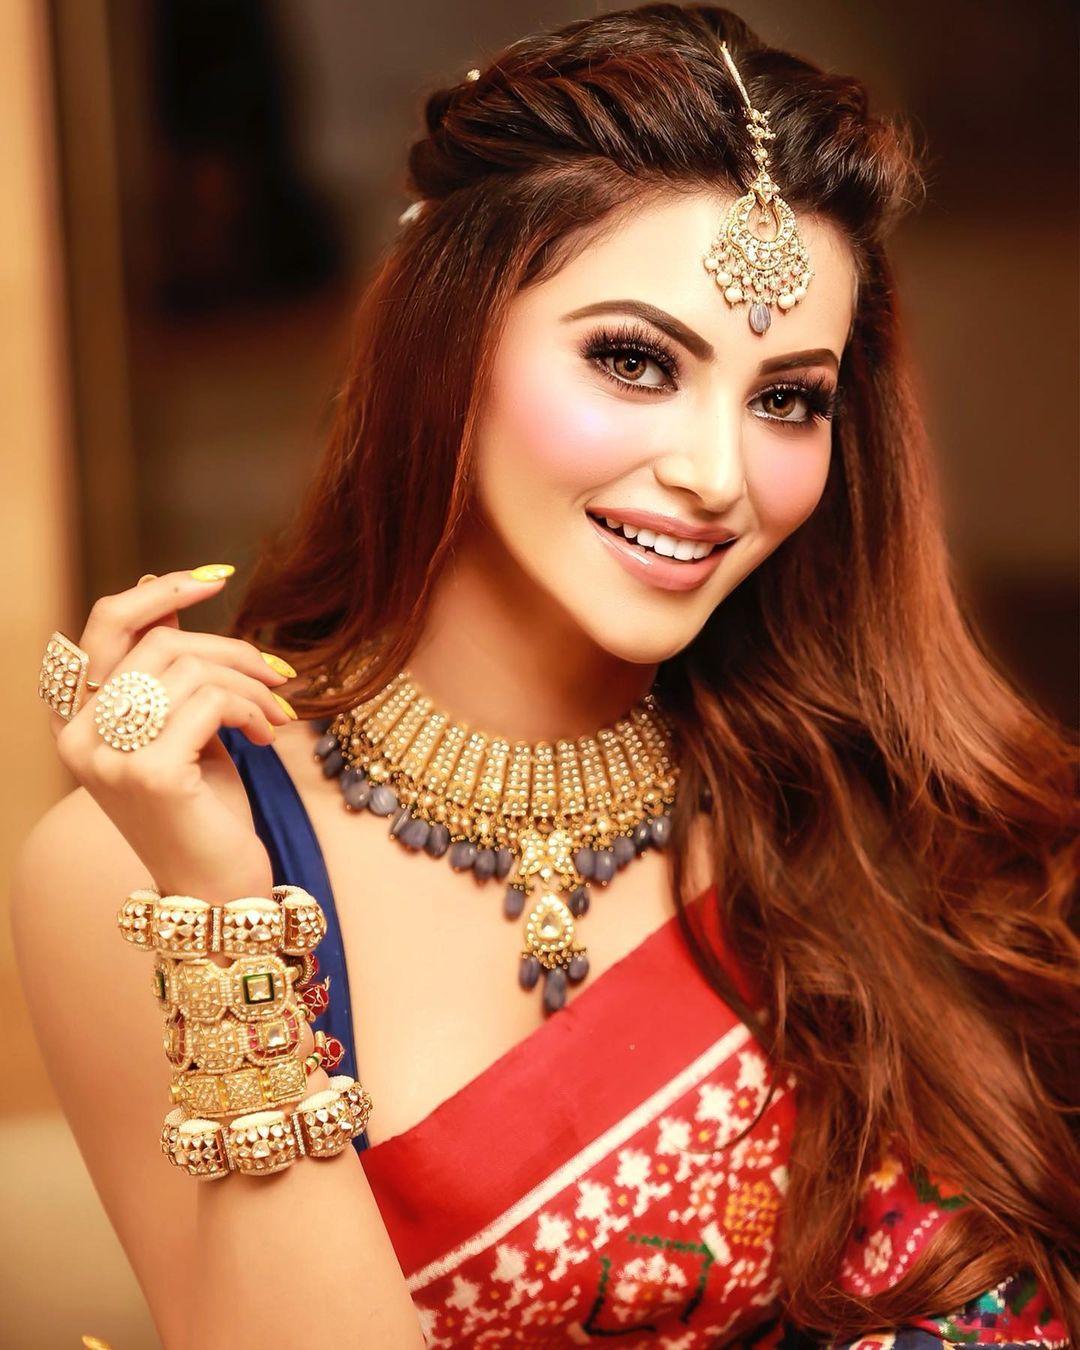 Bất ngờ khi Hoa hậu Hoàn vũ Ấn Độ là fan cứng của Sơn Tùng - Ảnh 1